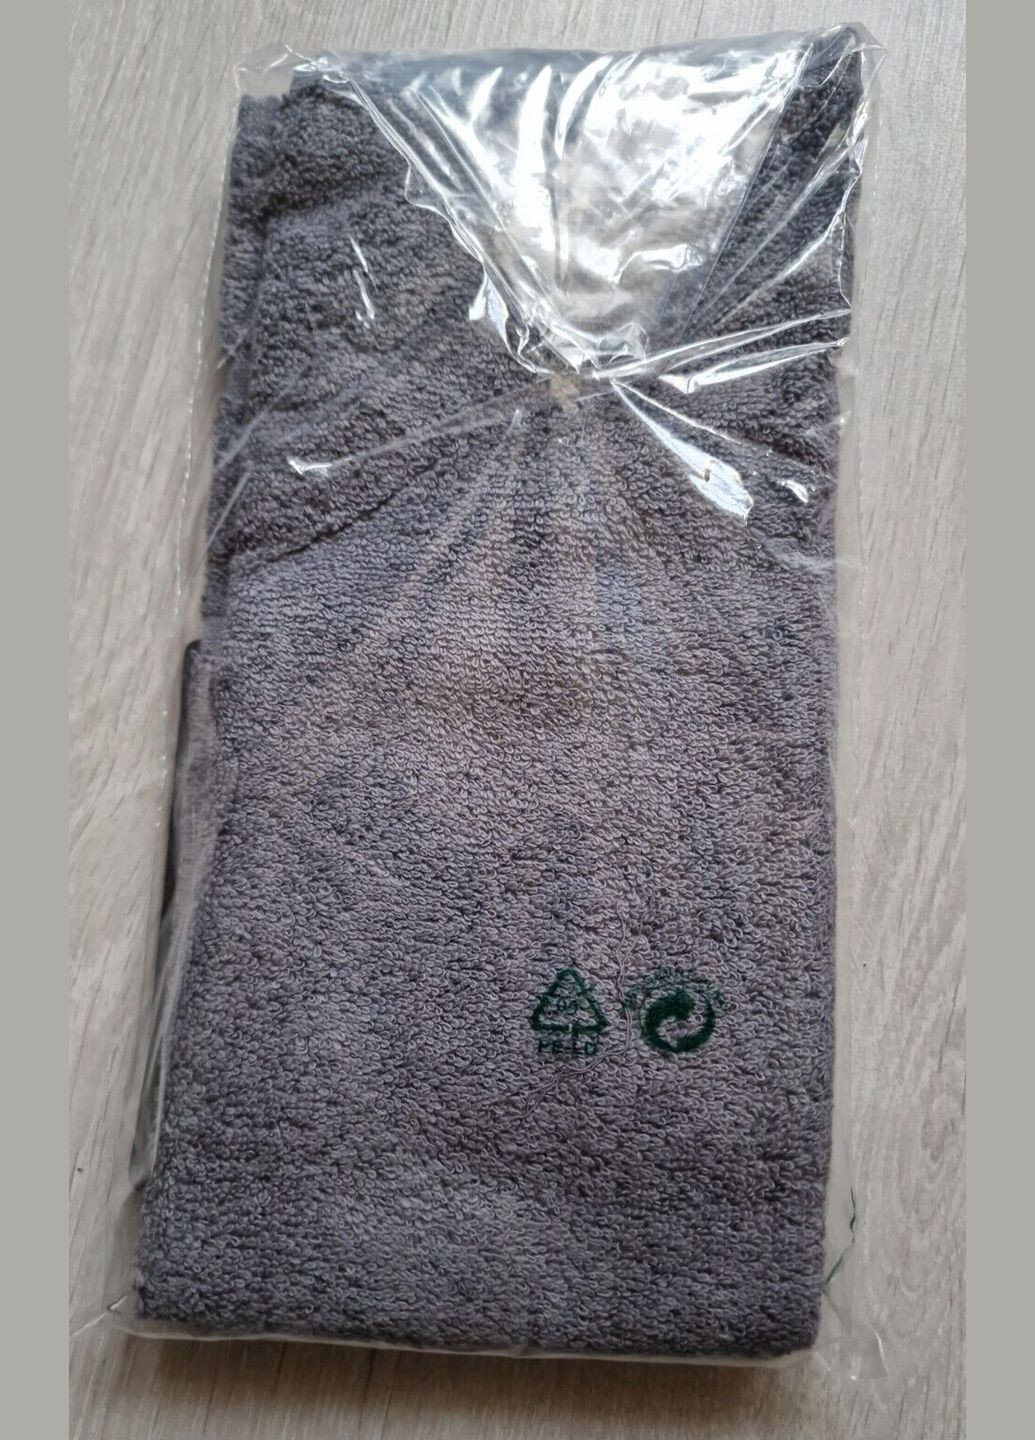 Everlast маленькое полотенце для зала спорта логотип серый производство - Турция